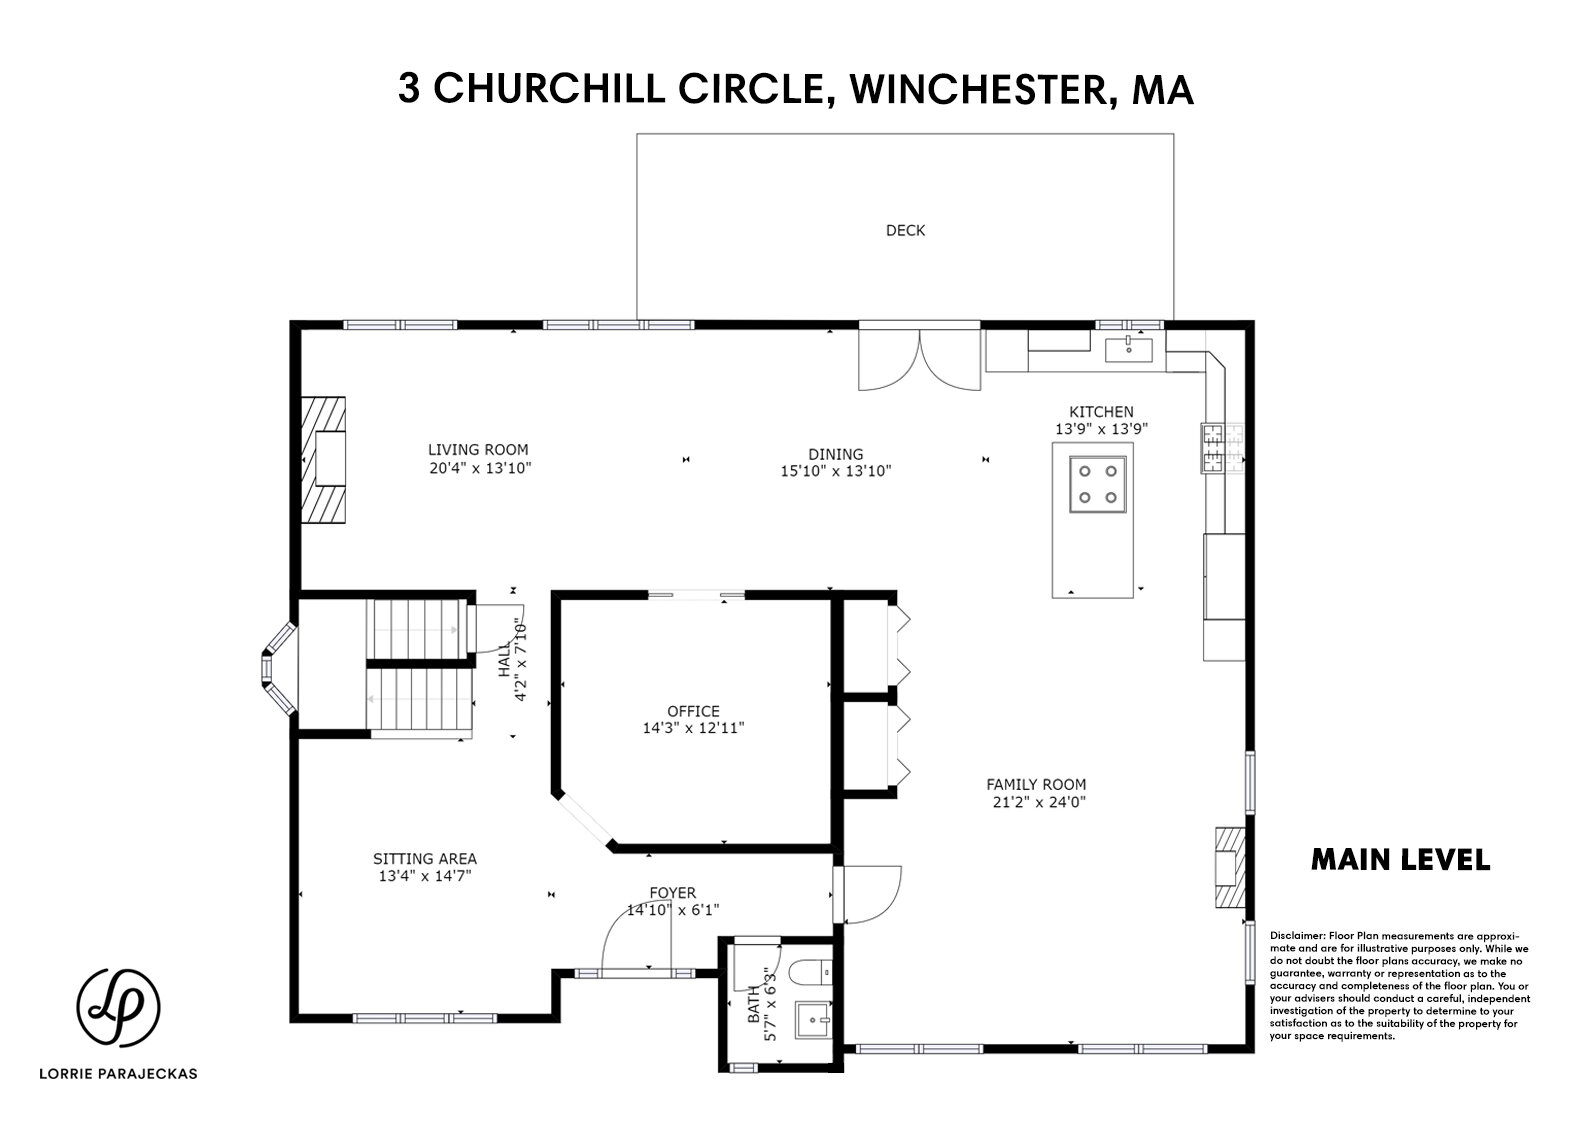 3 Churchill Cir- Floor Plans_MAIN_NEW 43021 - BRANDED.jpg